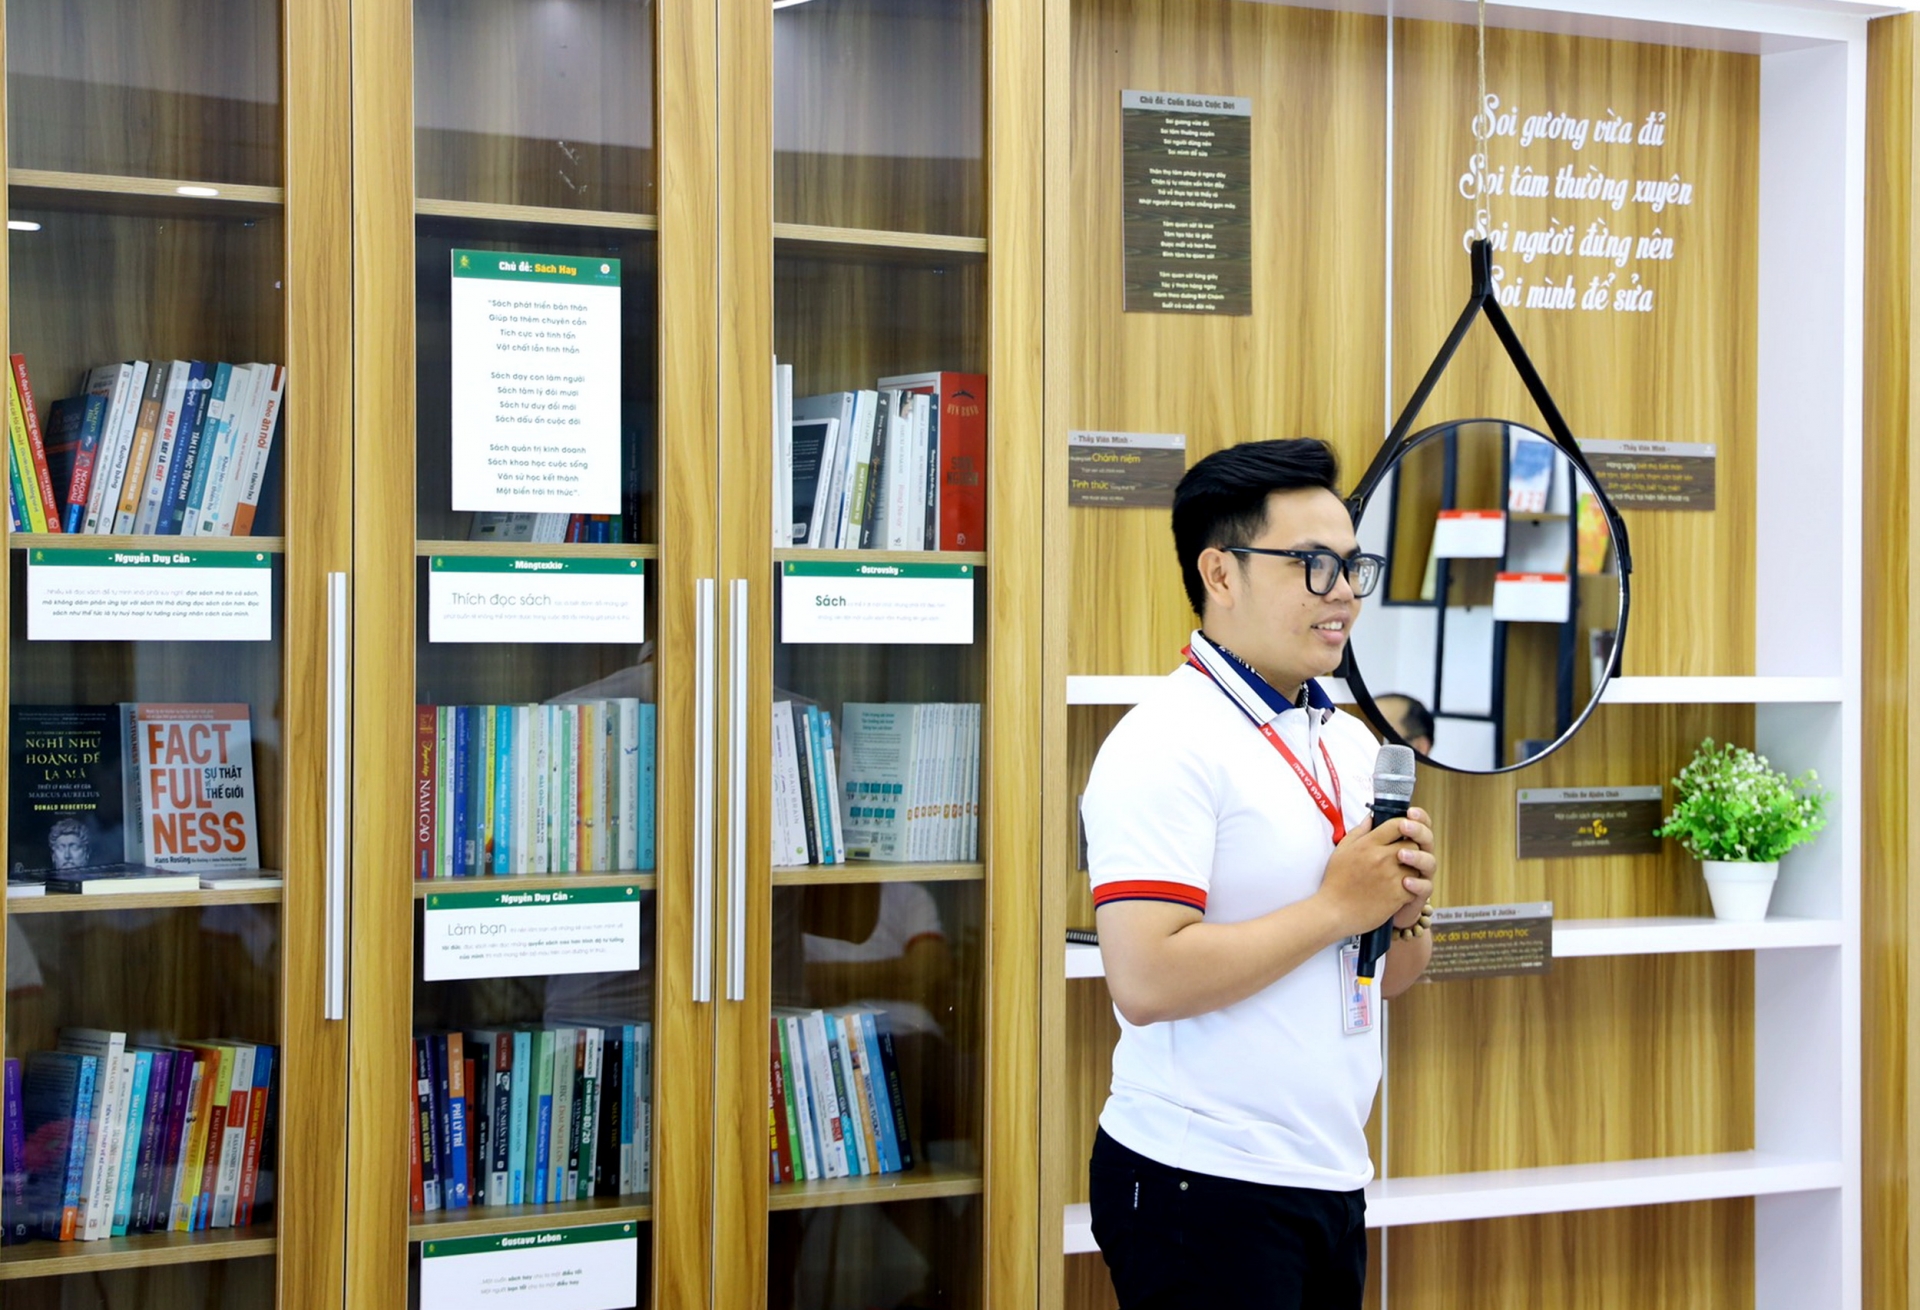 Công ty Khí Cà Mau: Ra mắt thư viện sách - Đẩy mạnh phát triển văn hóa đọc